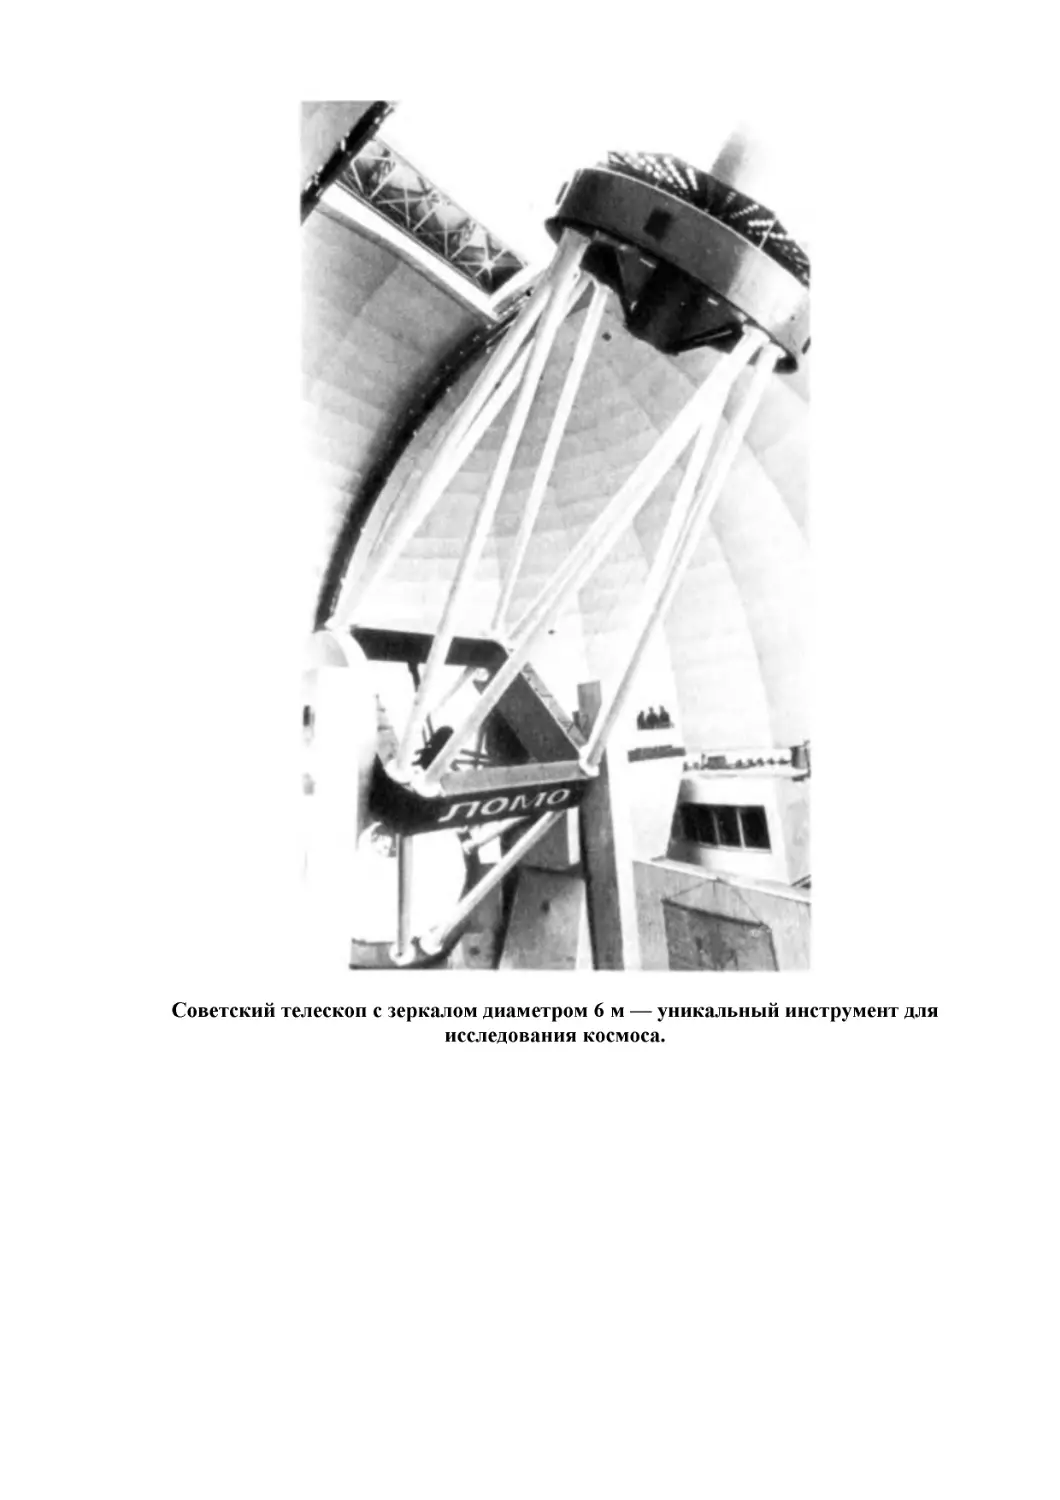 Советский телескоп с зеркалом диаметром 6 м — уникальный инструмент для исследования космоса.